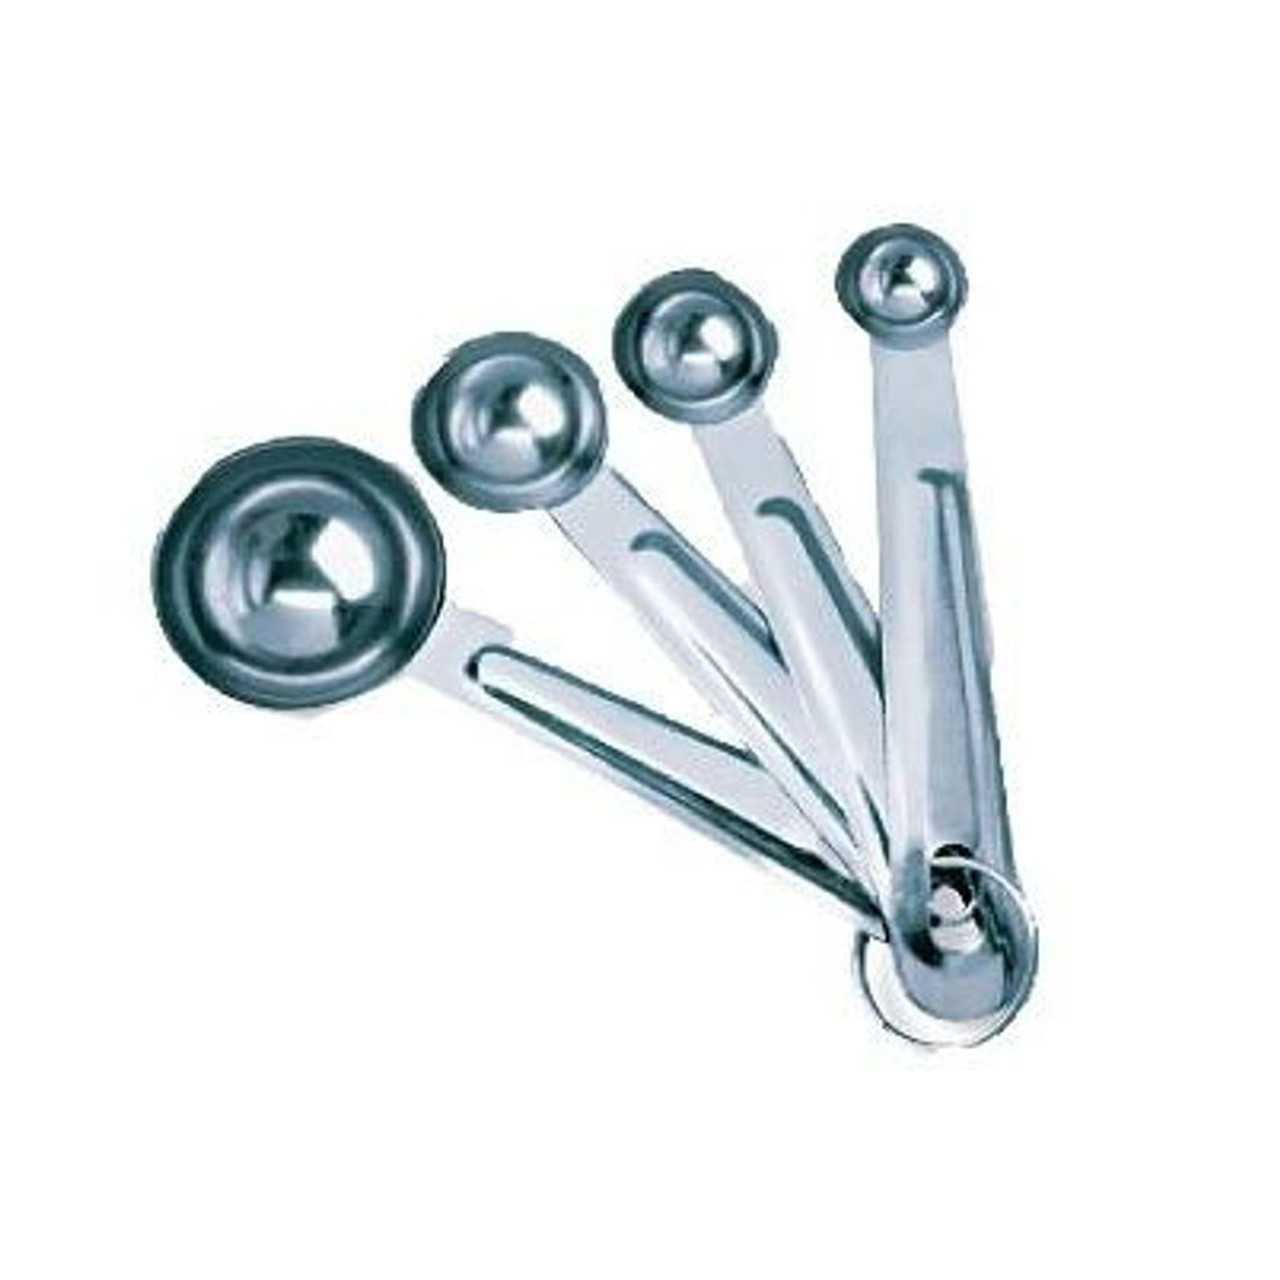 4-Pc Plastic Measuring Spoon Set ( 1/4 Tsp, 1/2 Tsp, 1 Tsp, 1 Tbsp